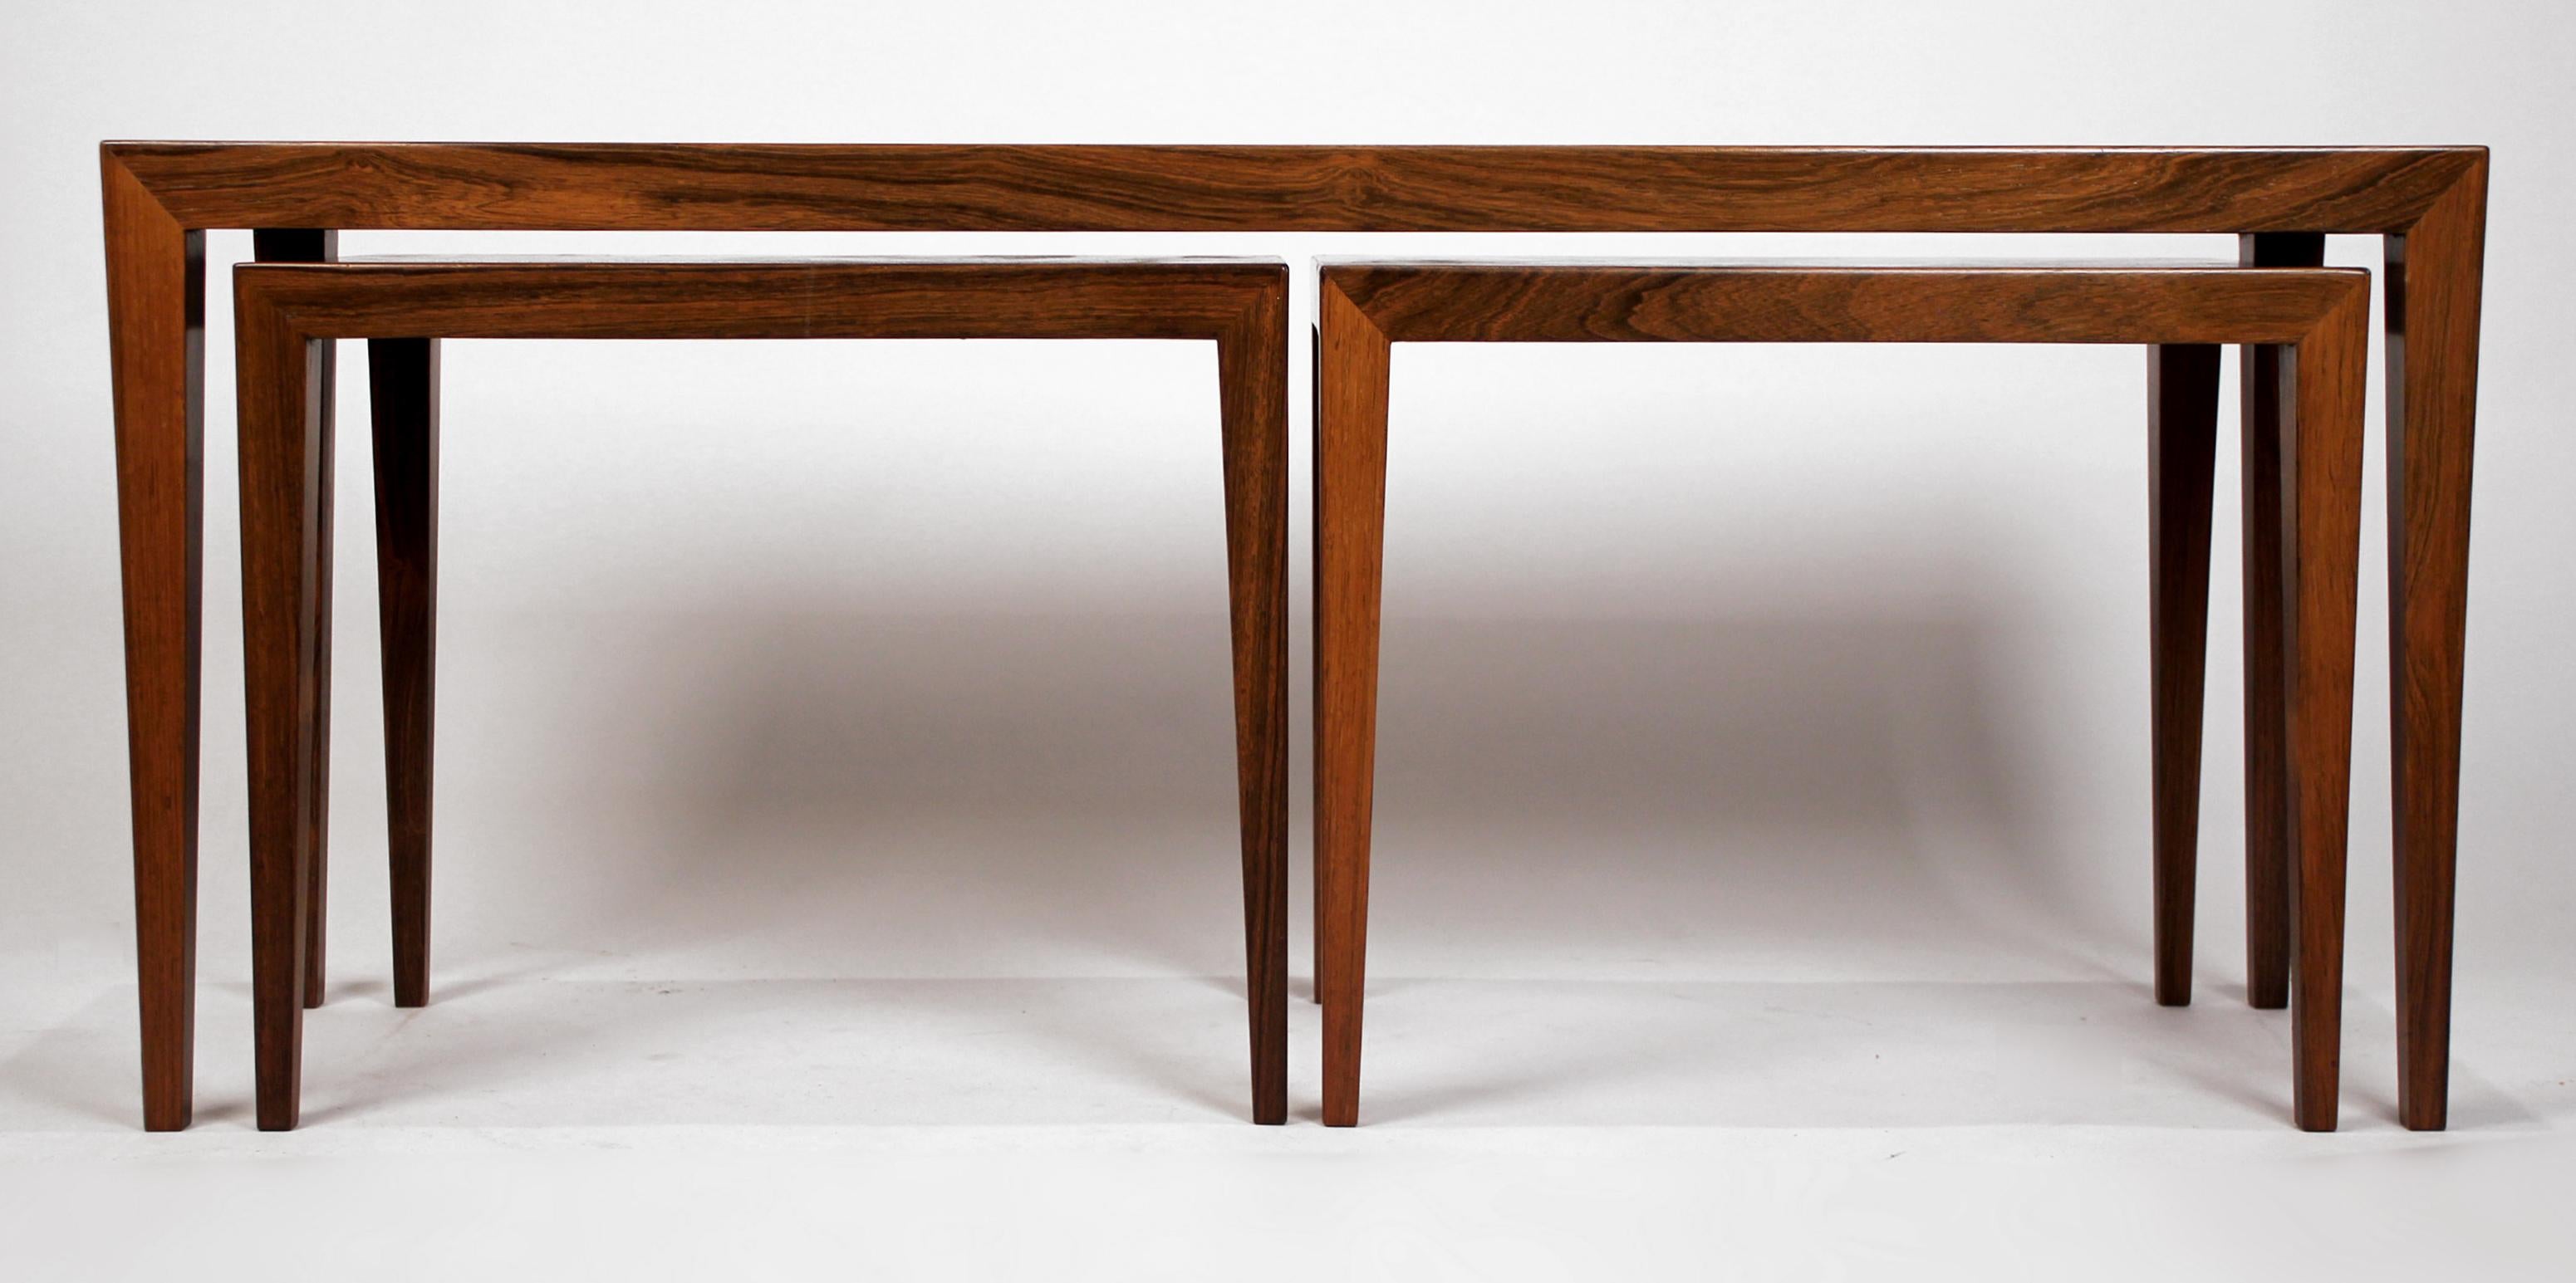 Ein Trio von Tischen aus Palisanderholz des skandinavischen Meisters Severin Hansen. Der große Tisch könnte als Couchtisch und die kleineren Tische als Getränke- oder Fernsehtische dienen. Die kleineren Tische haben ein wunderschönes